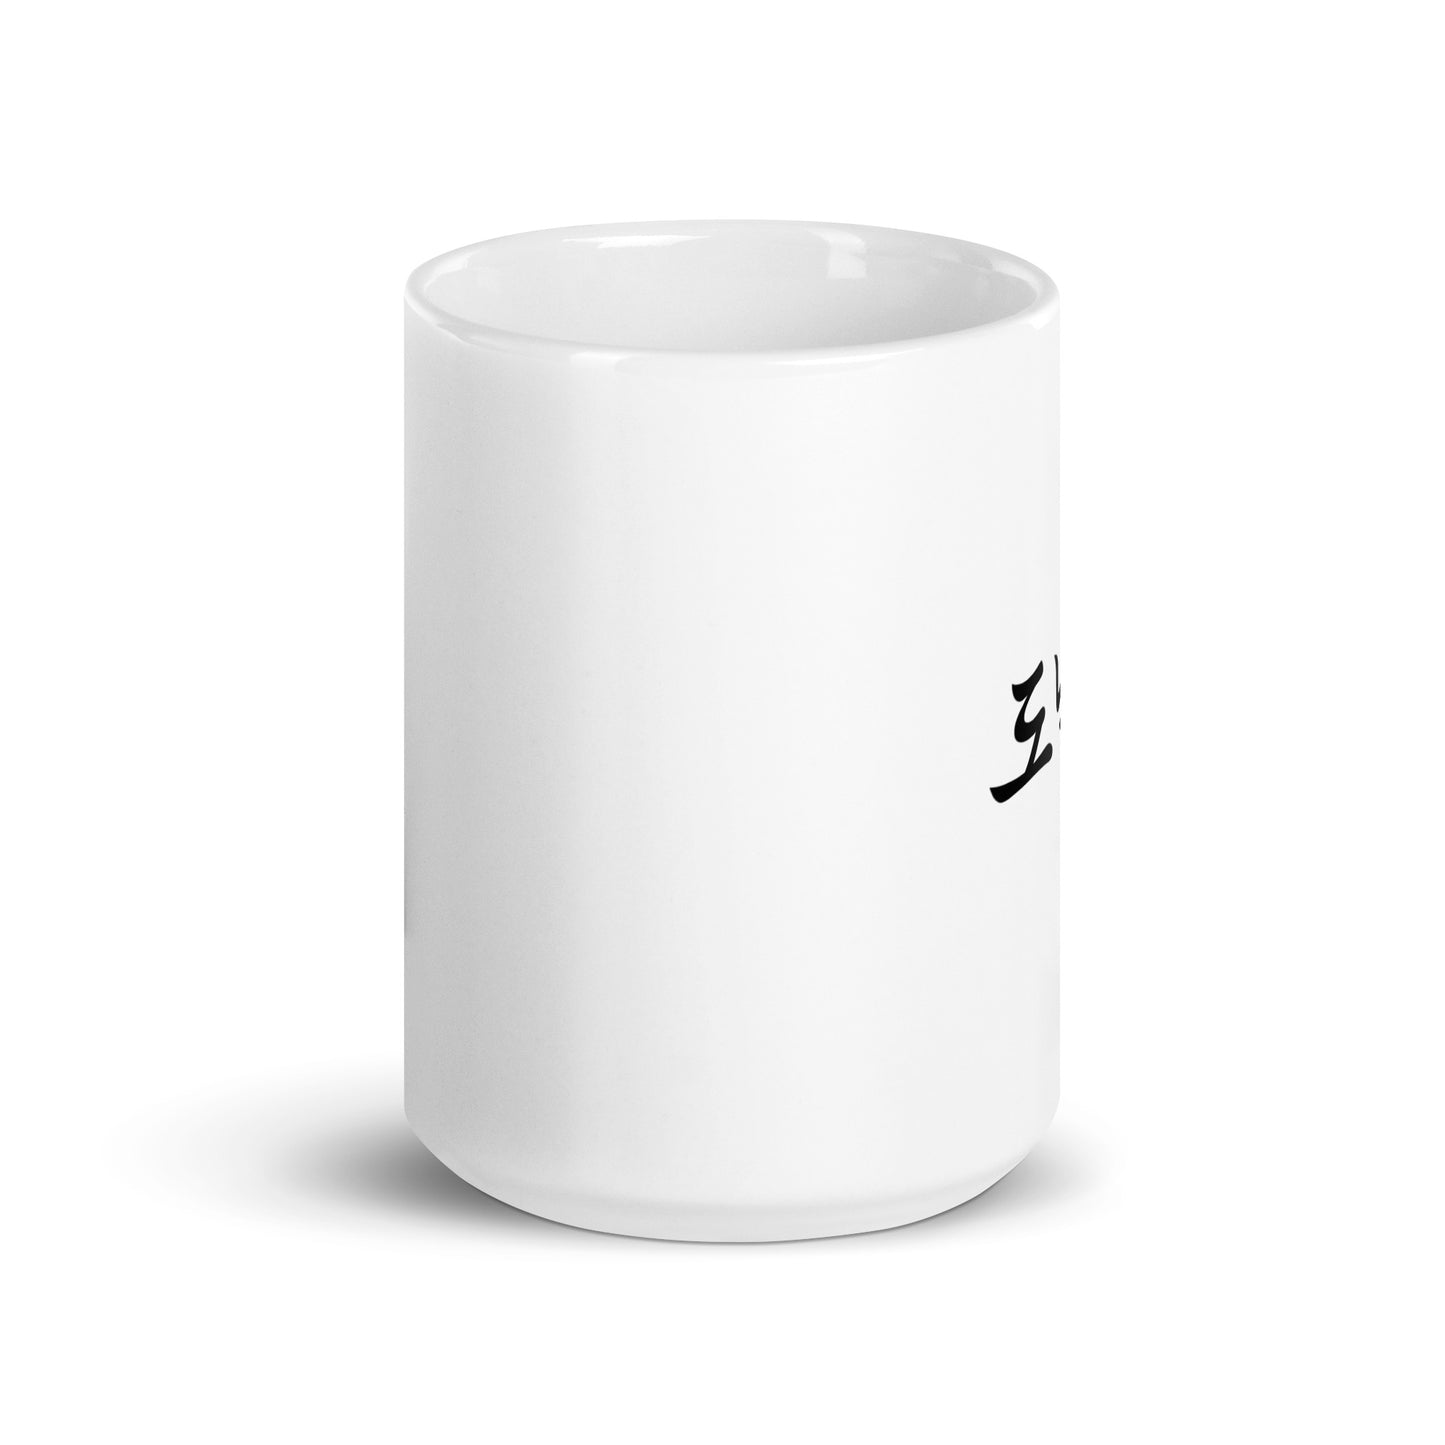 Donald in Hangul Custom Name Gift Ceramic Mug